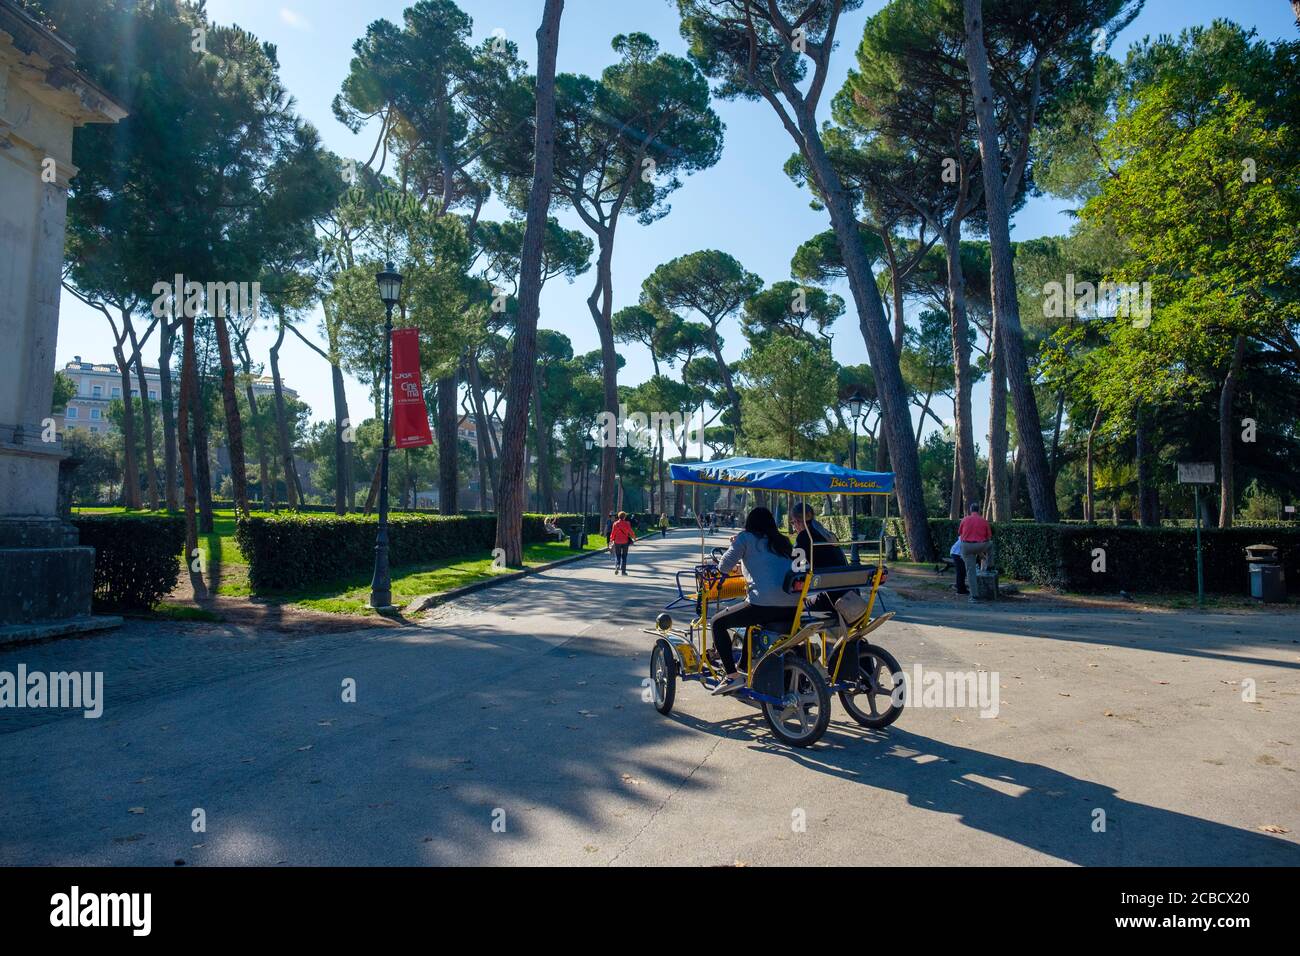 Les gens qui apprécient une journée d'été à cheval à Bici Pincio Rent un quadricycle de location de vélos, Villa Borghese Park, Rome, Italie Banque D'Images